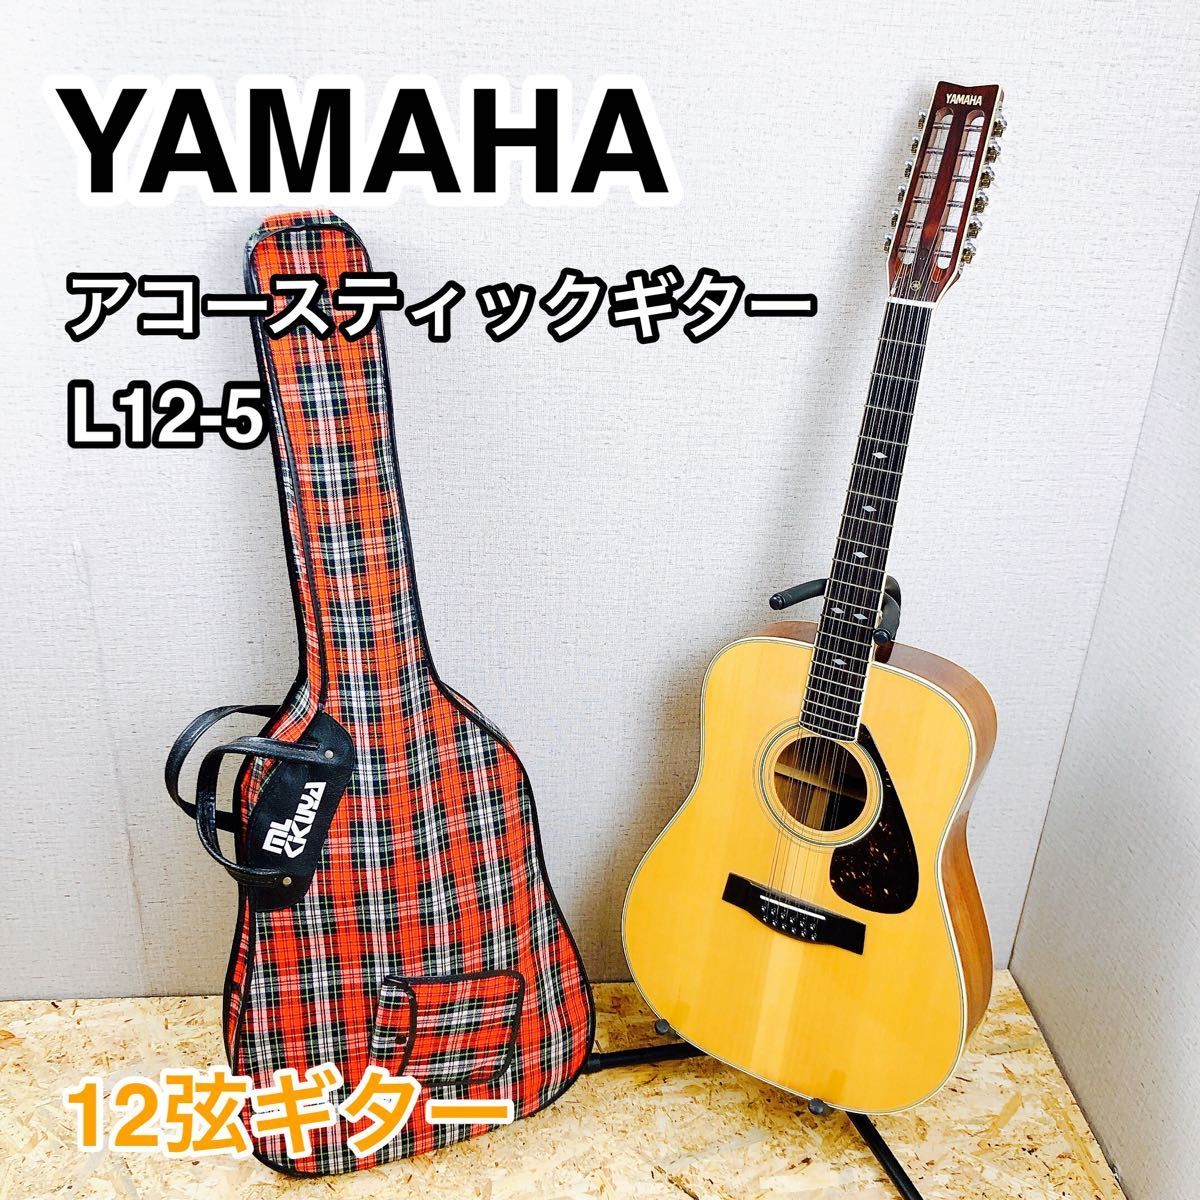 YAMAHA アコースティックギター L12-5 12弦ギター ビンテージの画像1